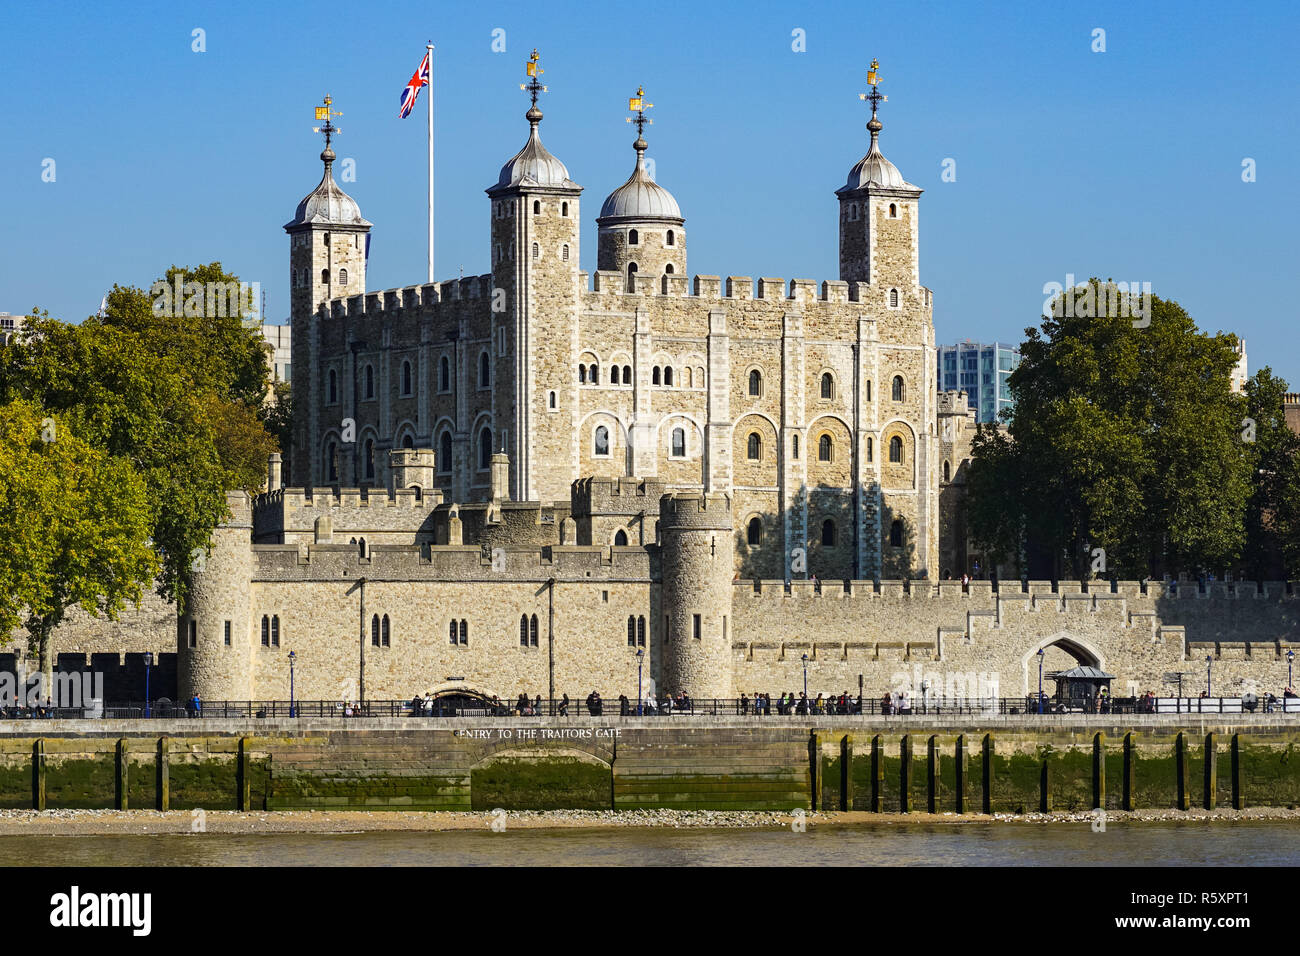 The Tower of London, London England United Kingdom UK Stock Photo